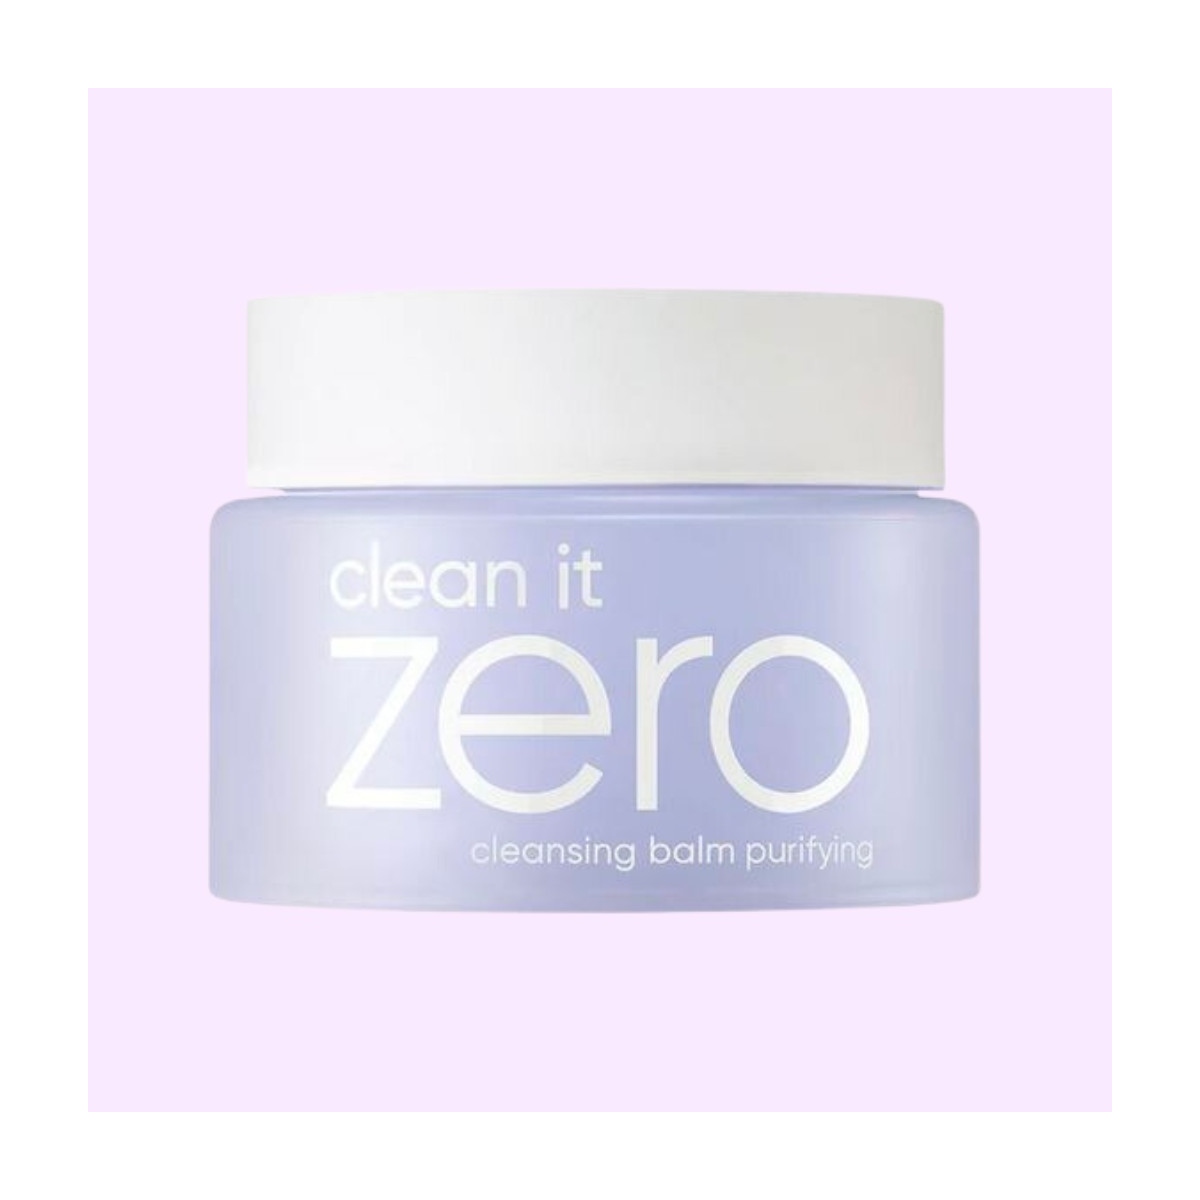 Aceites Limpiadores al mejor precio: Desmaquillante Clean It Zero Cleansing Balm Purifying de Banila Co. en Skin Thinks - Piel Sensible